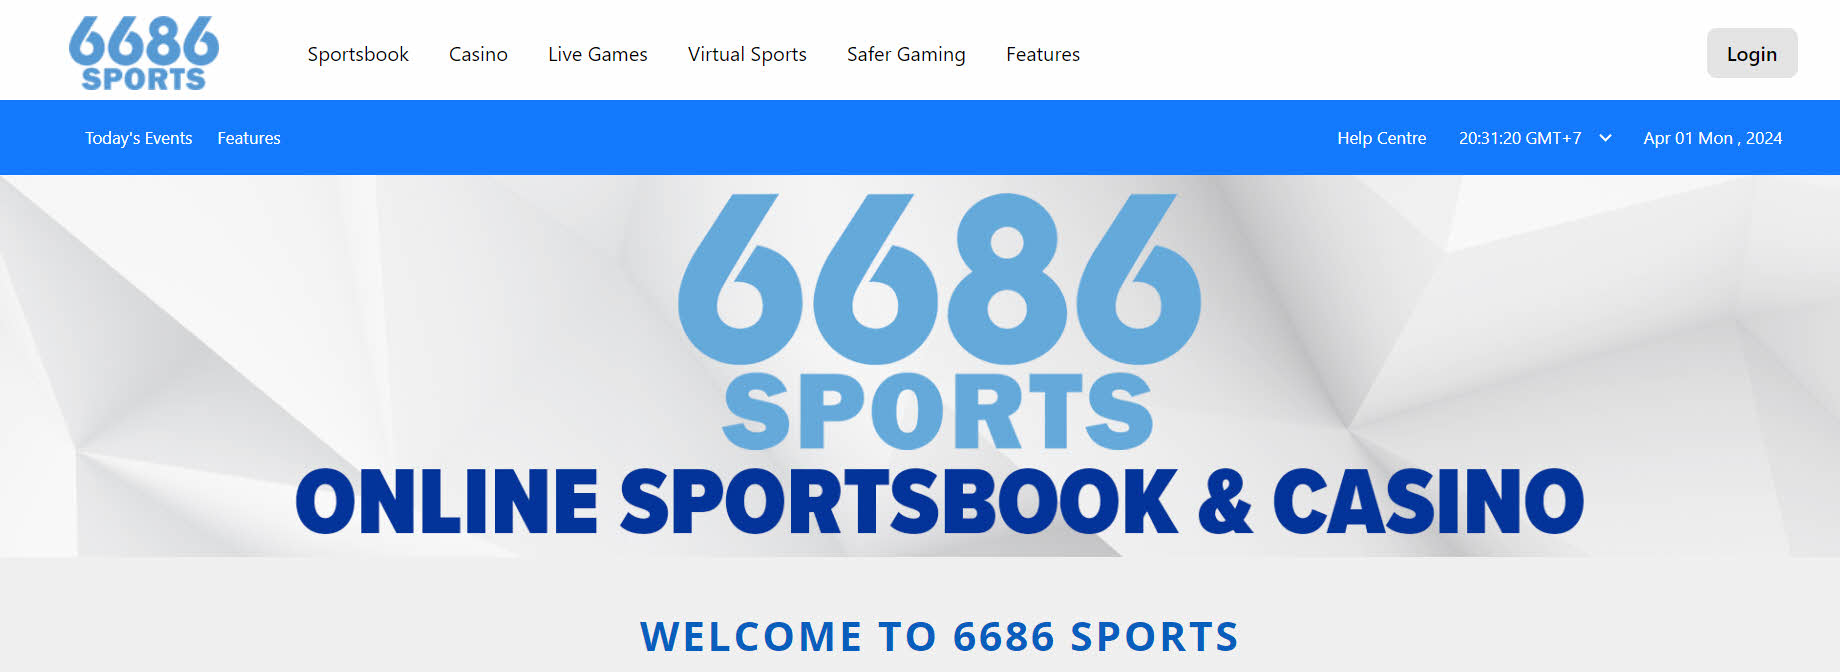 6686 Sports - một lựa chọn an toàn cho người chơi cá độ bóng đá